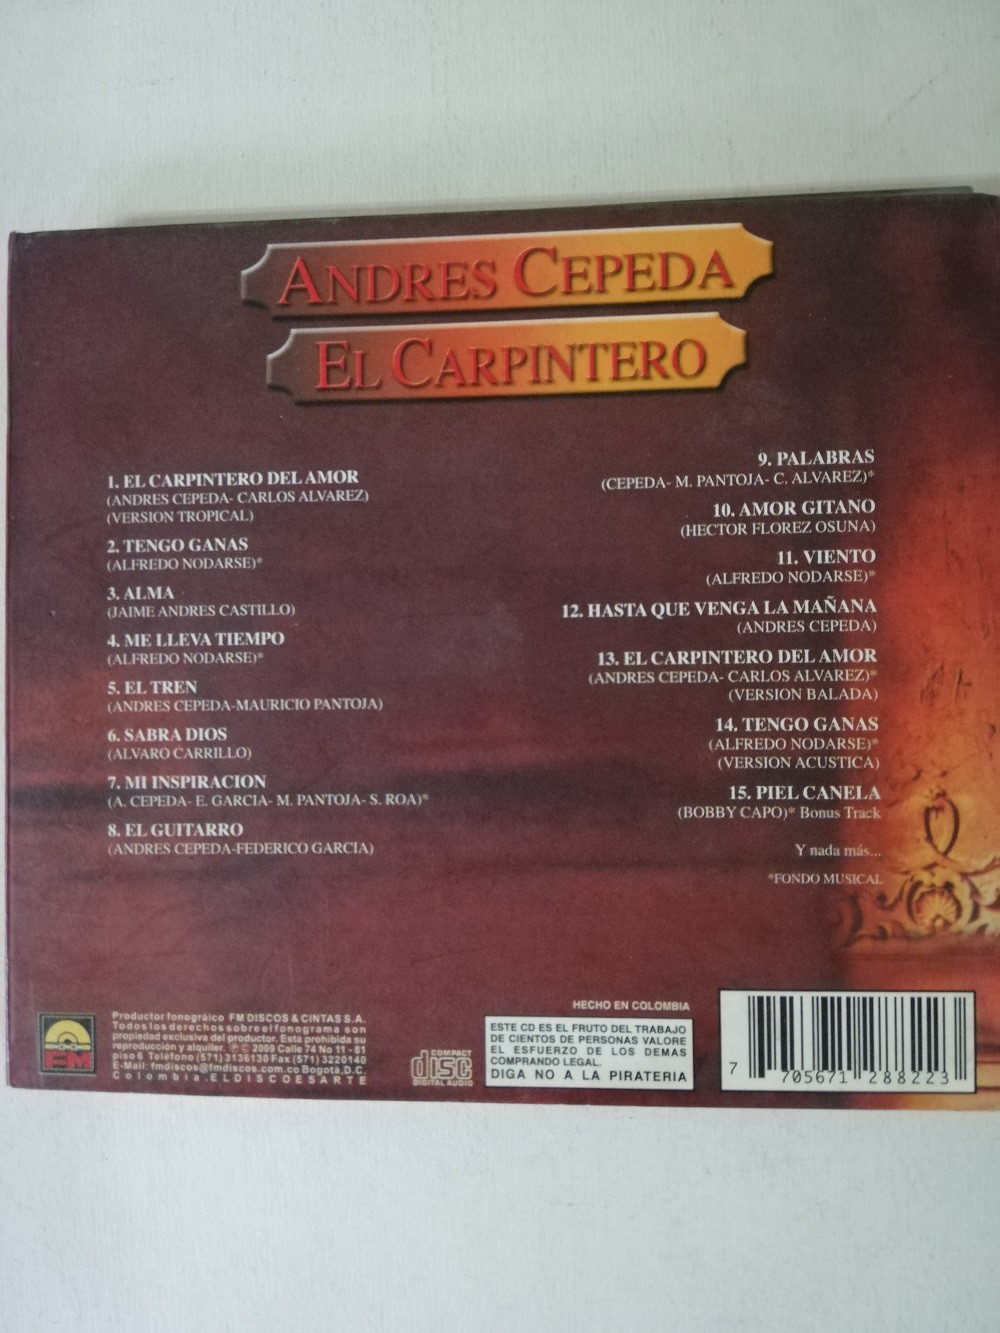 Imagen CD ANDRES CEPEDA - EL CARPINTERO 2